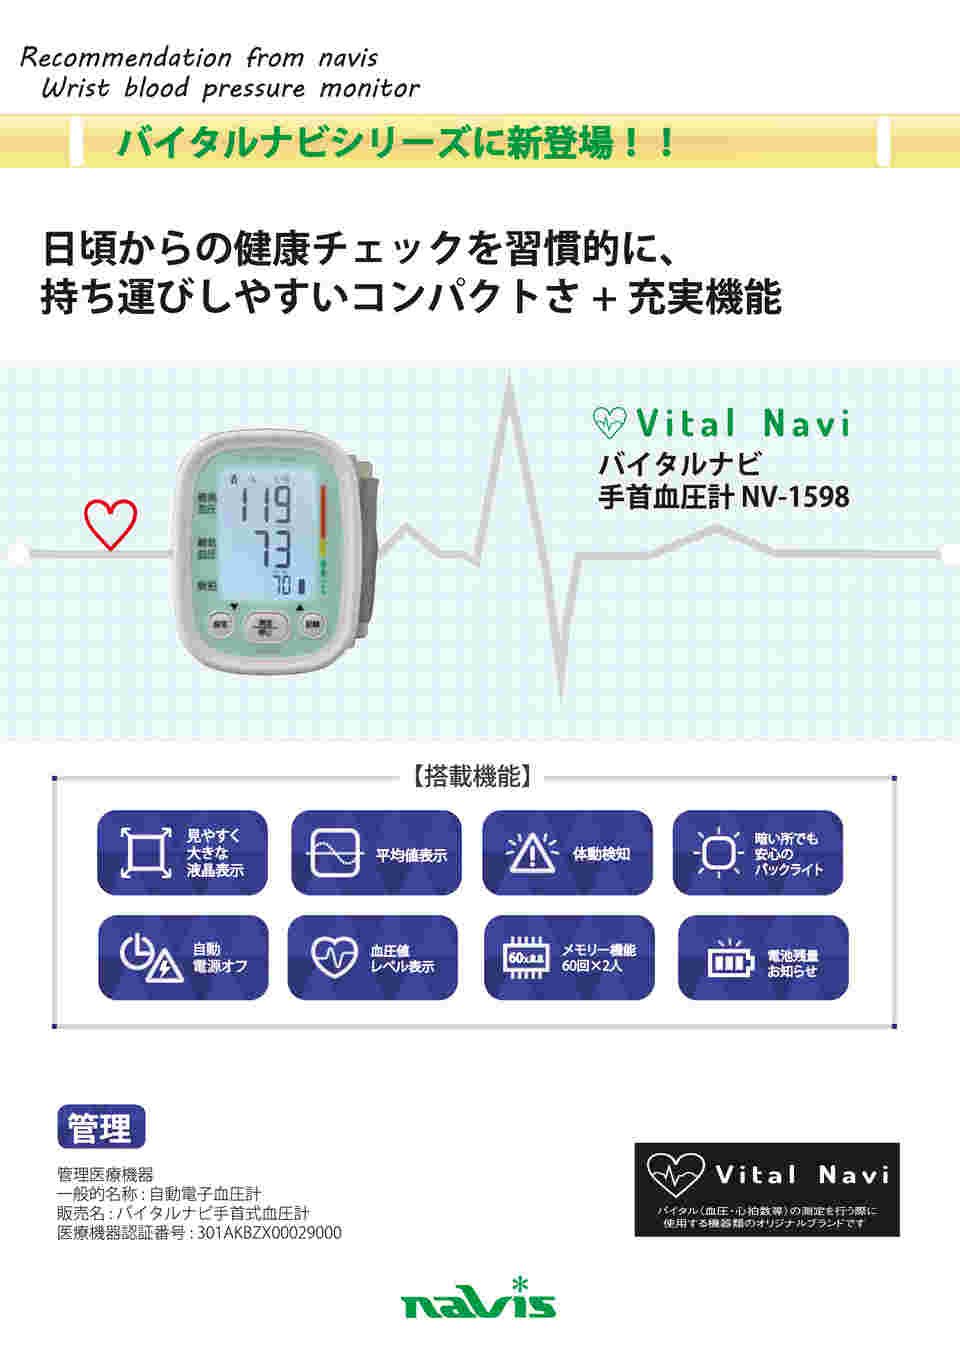 7-6816-01 バイタルナビ手首式血圧計 NV-1598 【AXEL】 アズワン